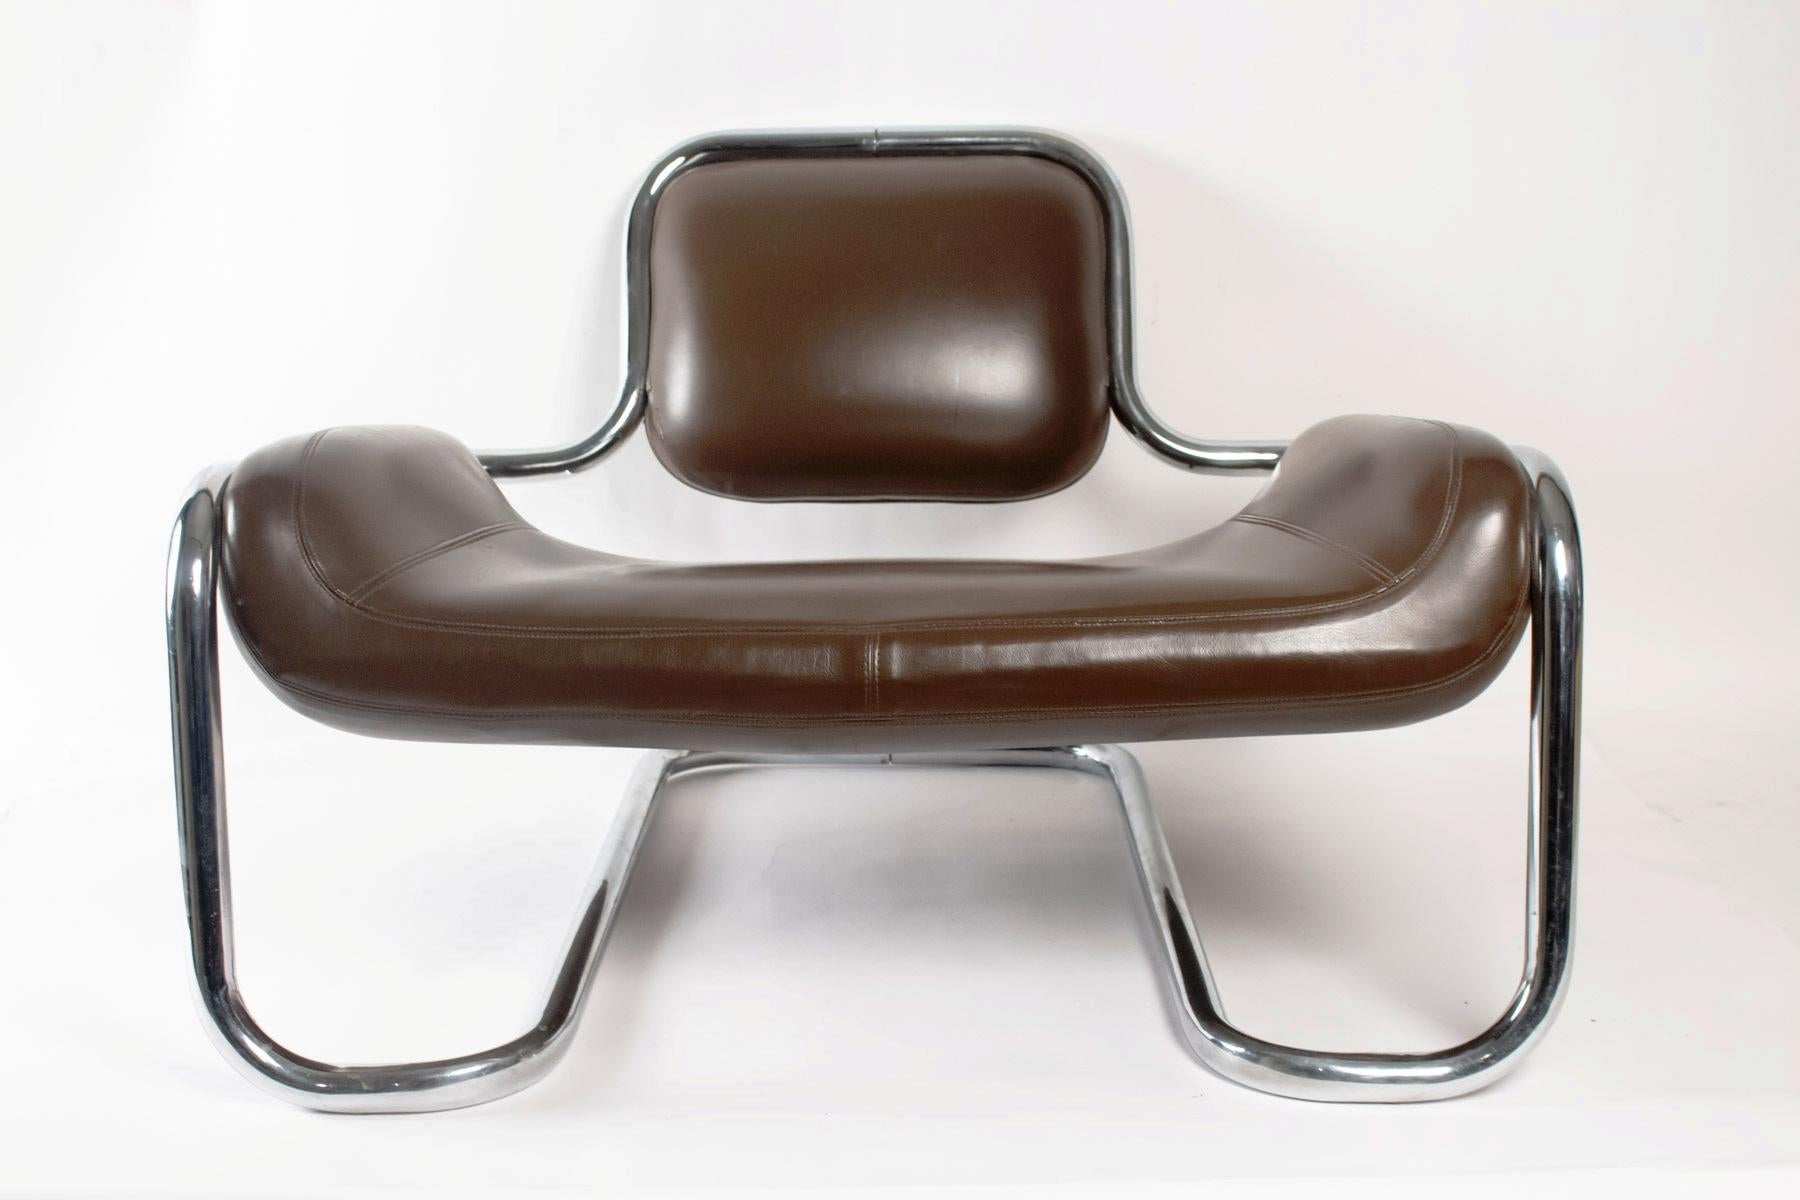 Fabuleux fauteuil futuriste Limande par Kwok Hoï Chan pour  Maison Maison Steiner, 1968, France,
Skai chromé et chocolaté
rayures mineures.

Né à Hong Kong en 1939, Kwok Hoï Chan est une figure attachante du design international. Il entreprend des